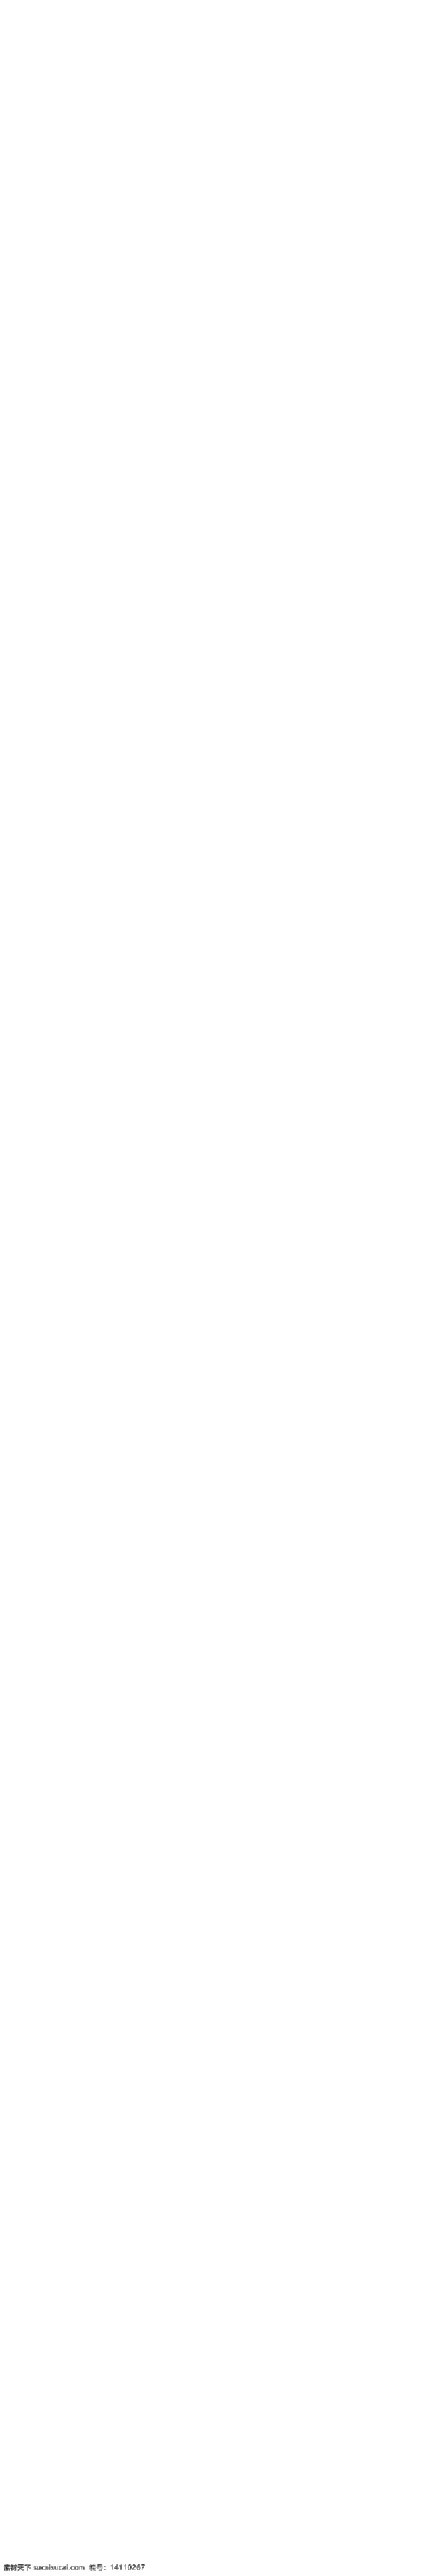 手机 app 专题 介绍 页面 psd素材 网页设计 网页模板 网页界面 界面设计 网页版式 版式设计 网页布局 公司网站 企业网站 手机app 功能介绍 效果展示 紫色